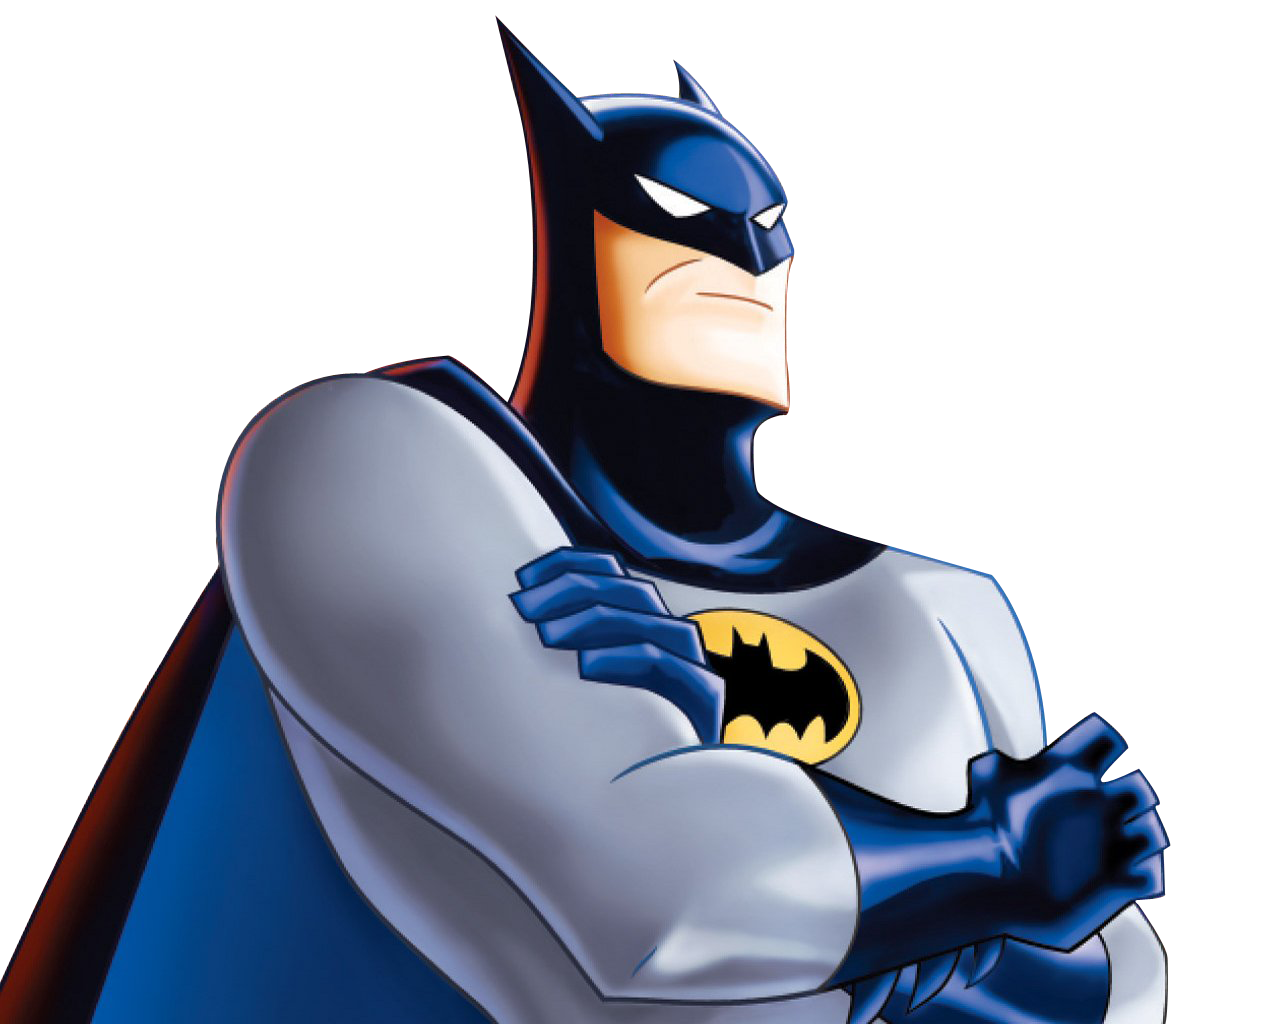 Batman PNG Pic